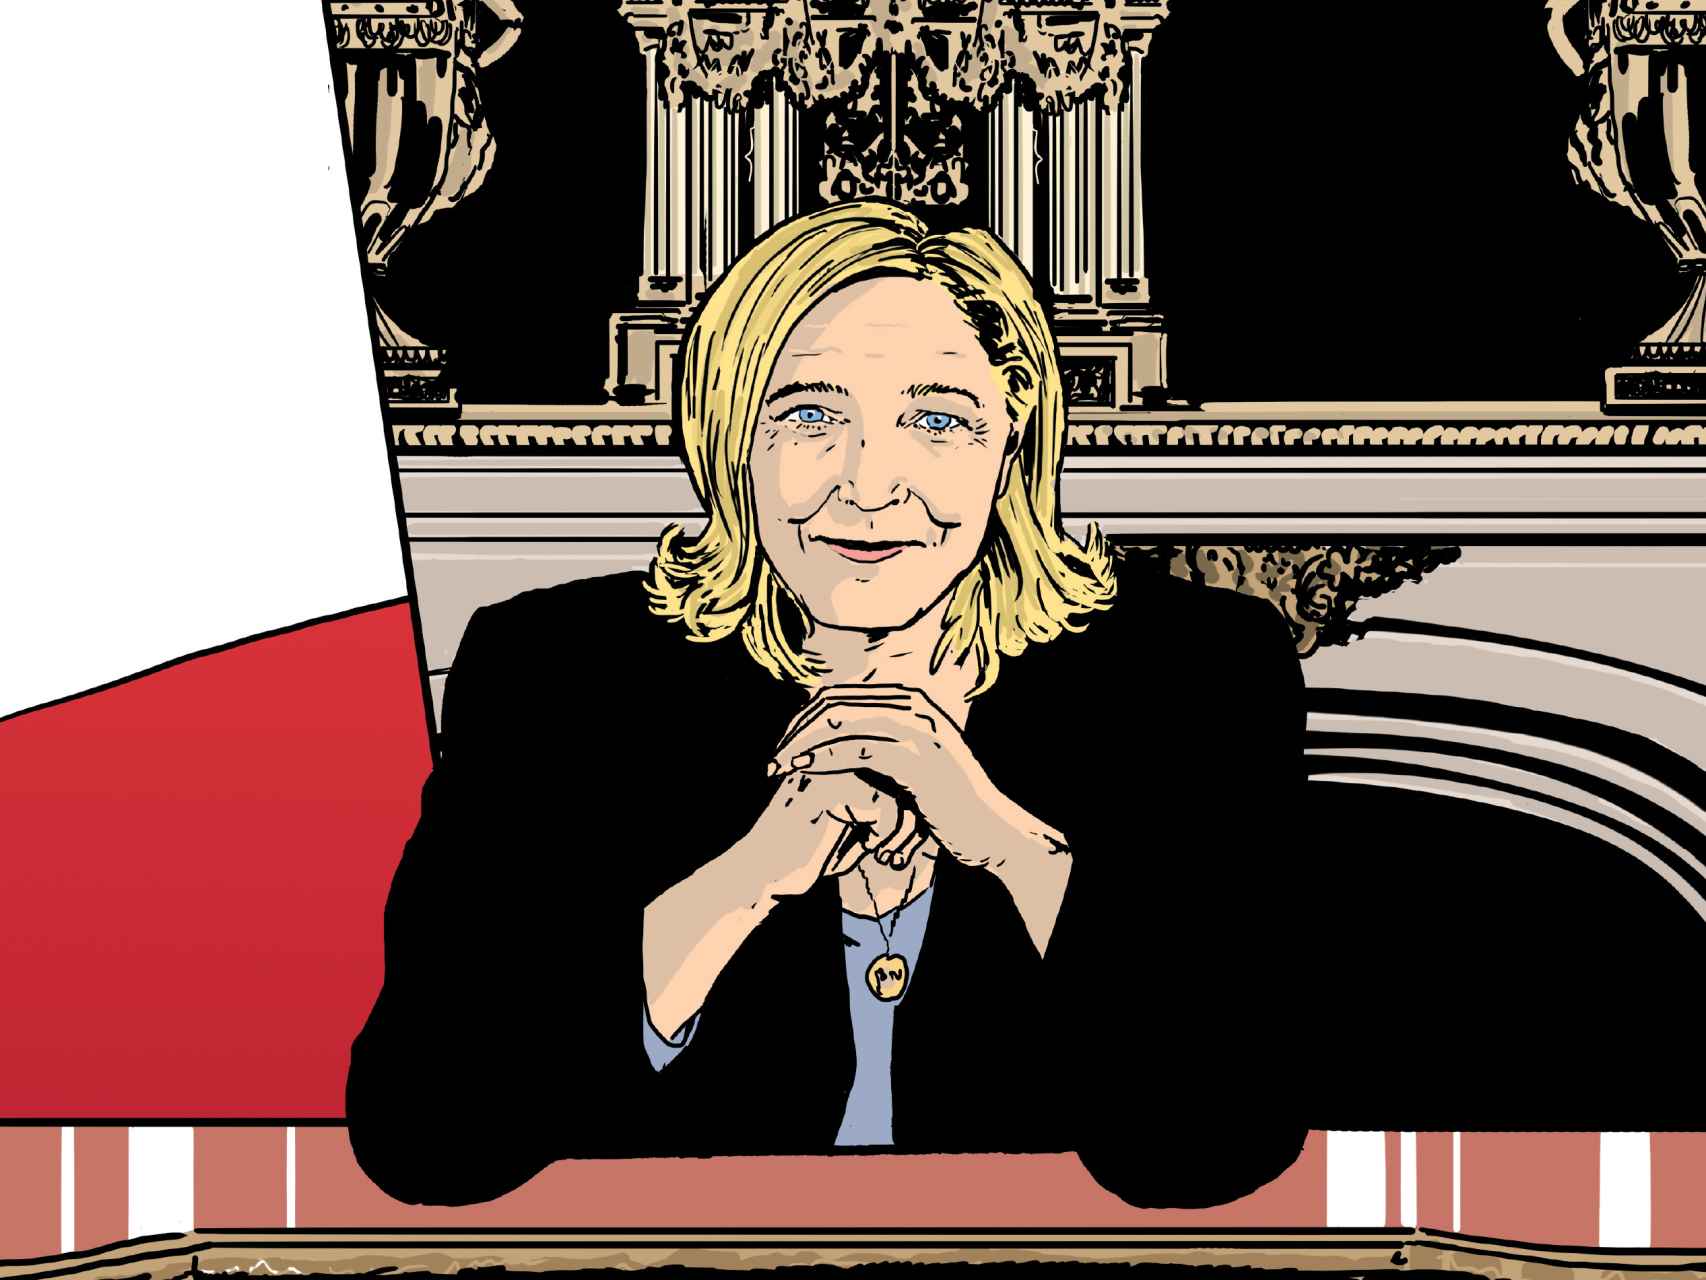 Ilustración principal del comic que sugiere a Marine Le Pen como presidenta.